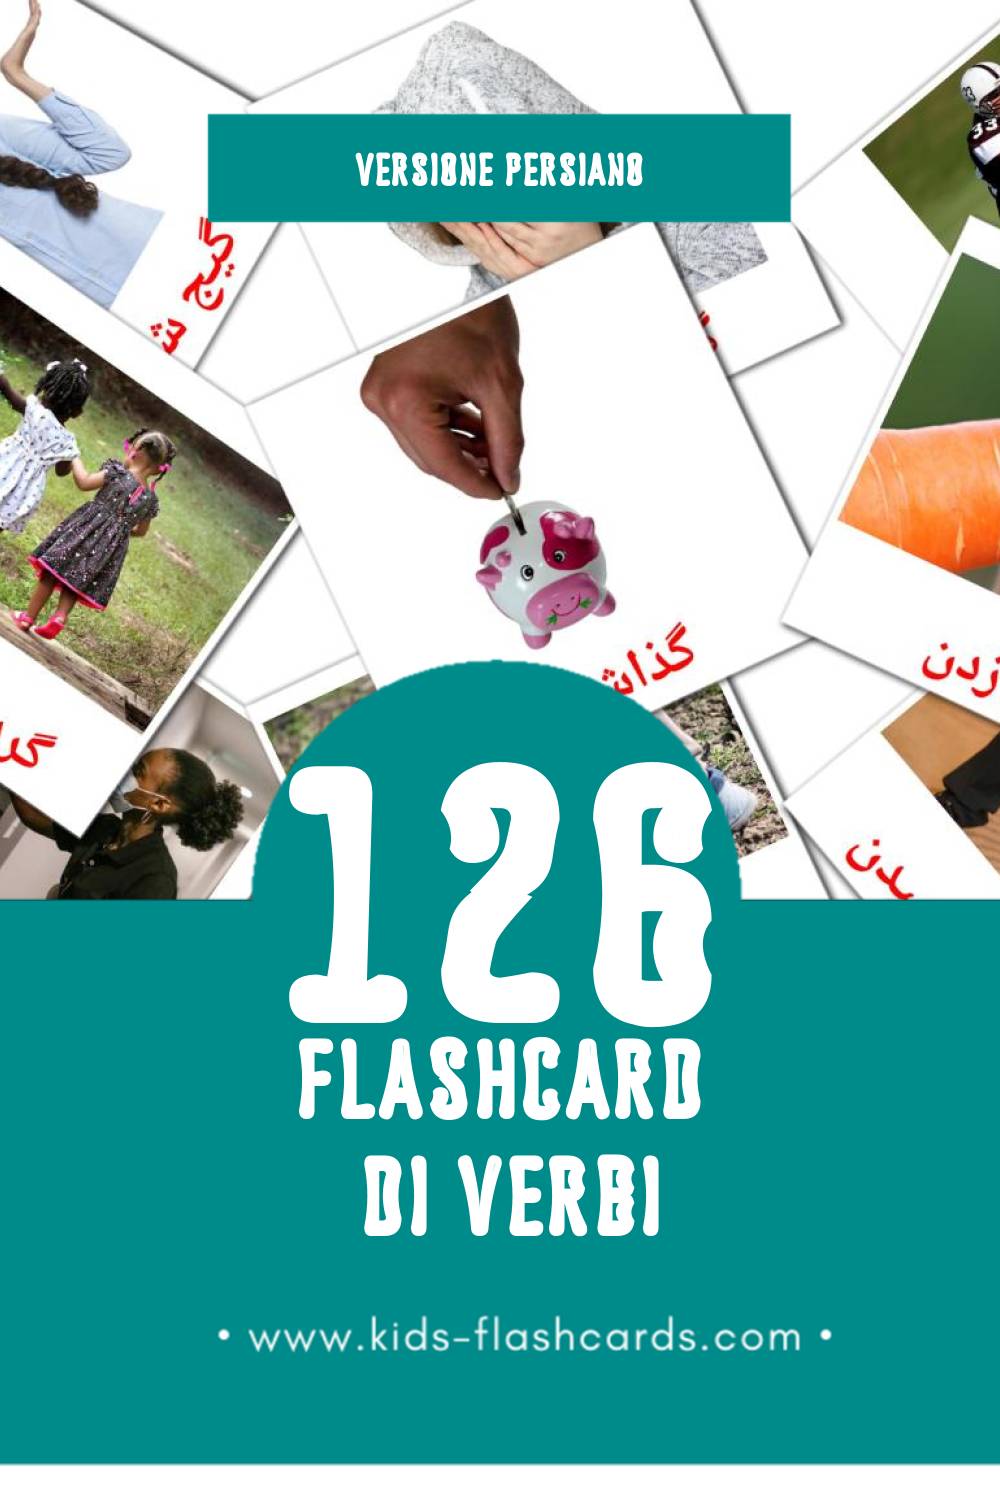 Schede visive sugli افعال per bambini (126 schede in Persiano)